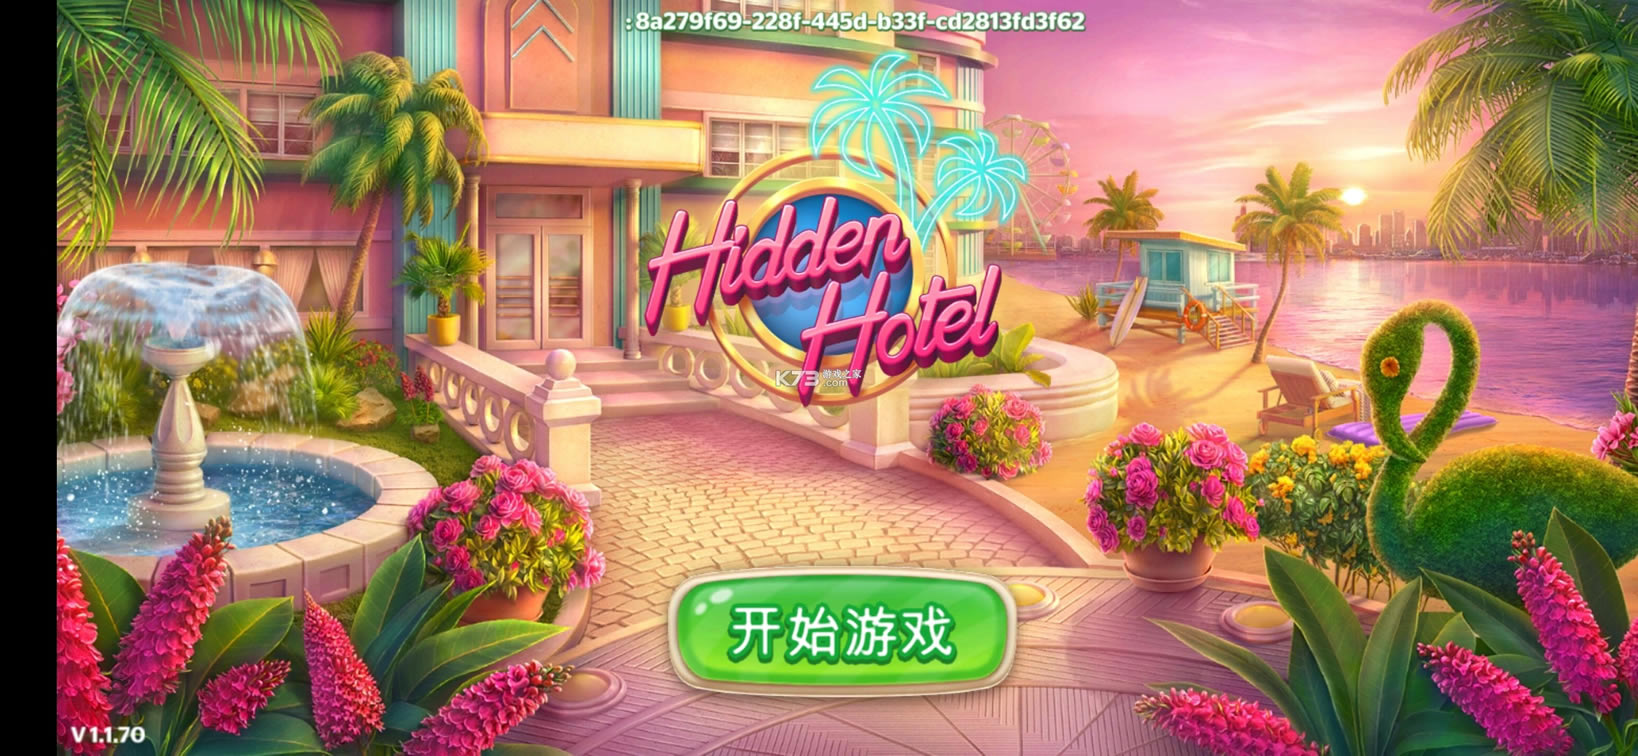 hidden hotelϷ޸İ-hidden hotelv1.1.78.1Ϸƽ